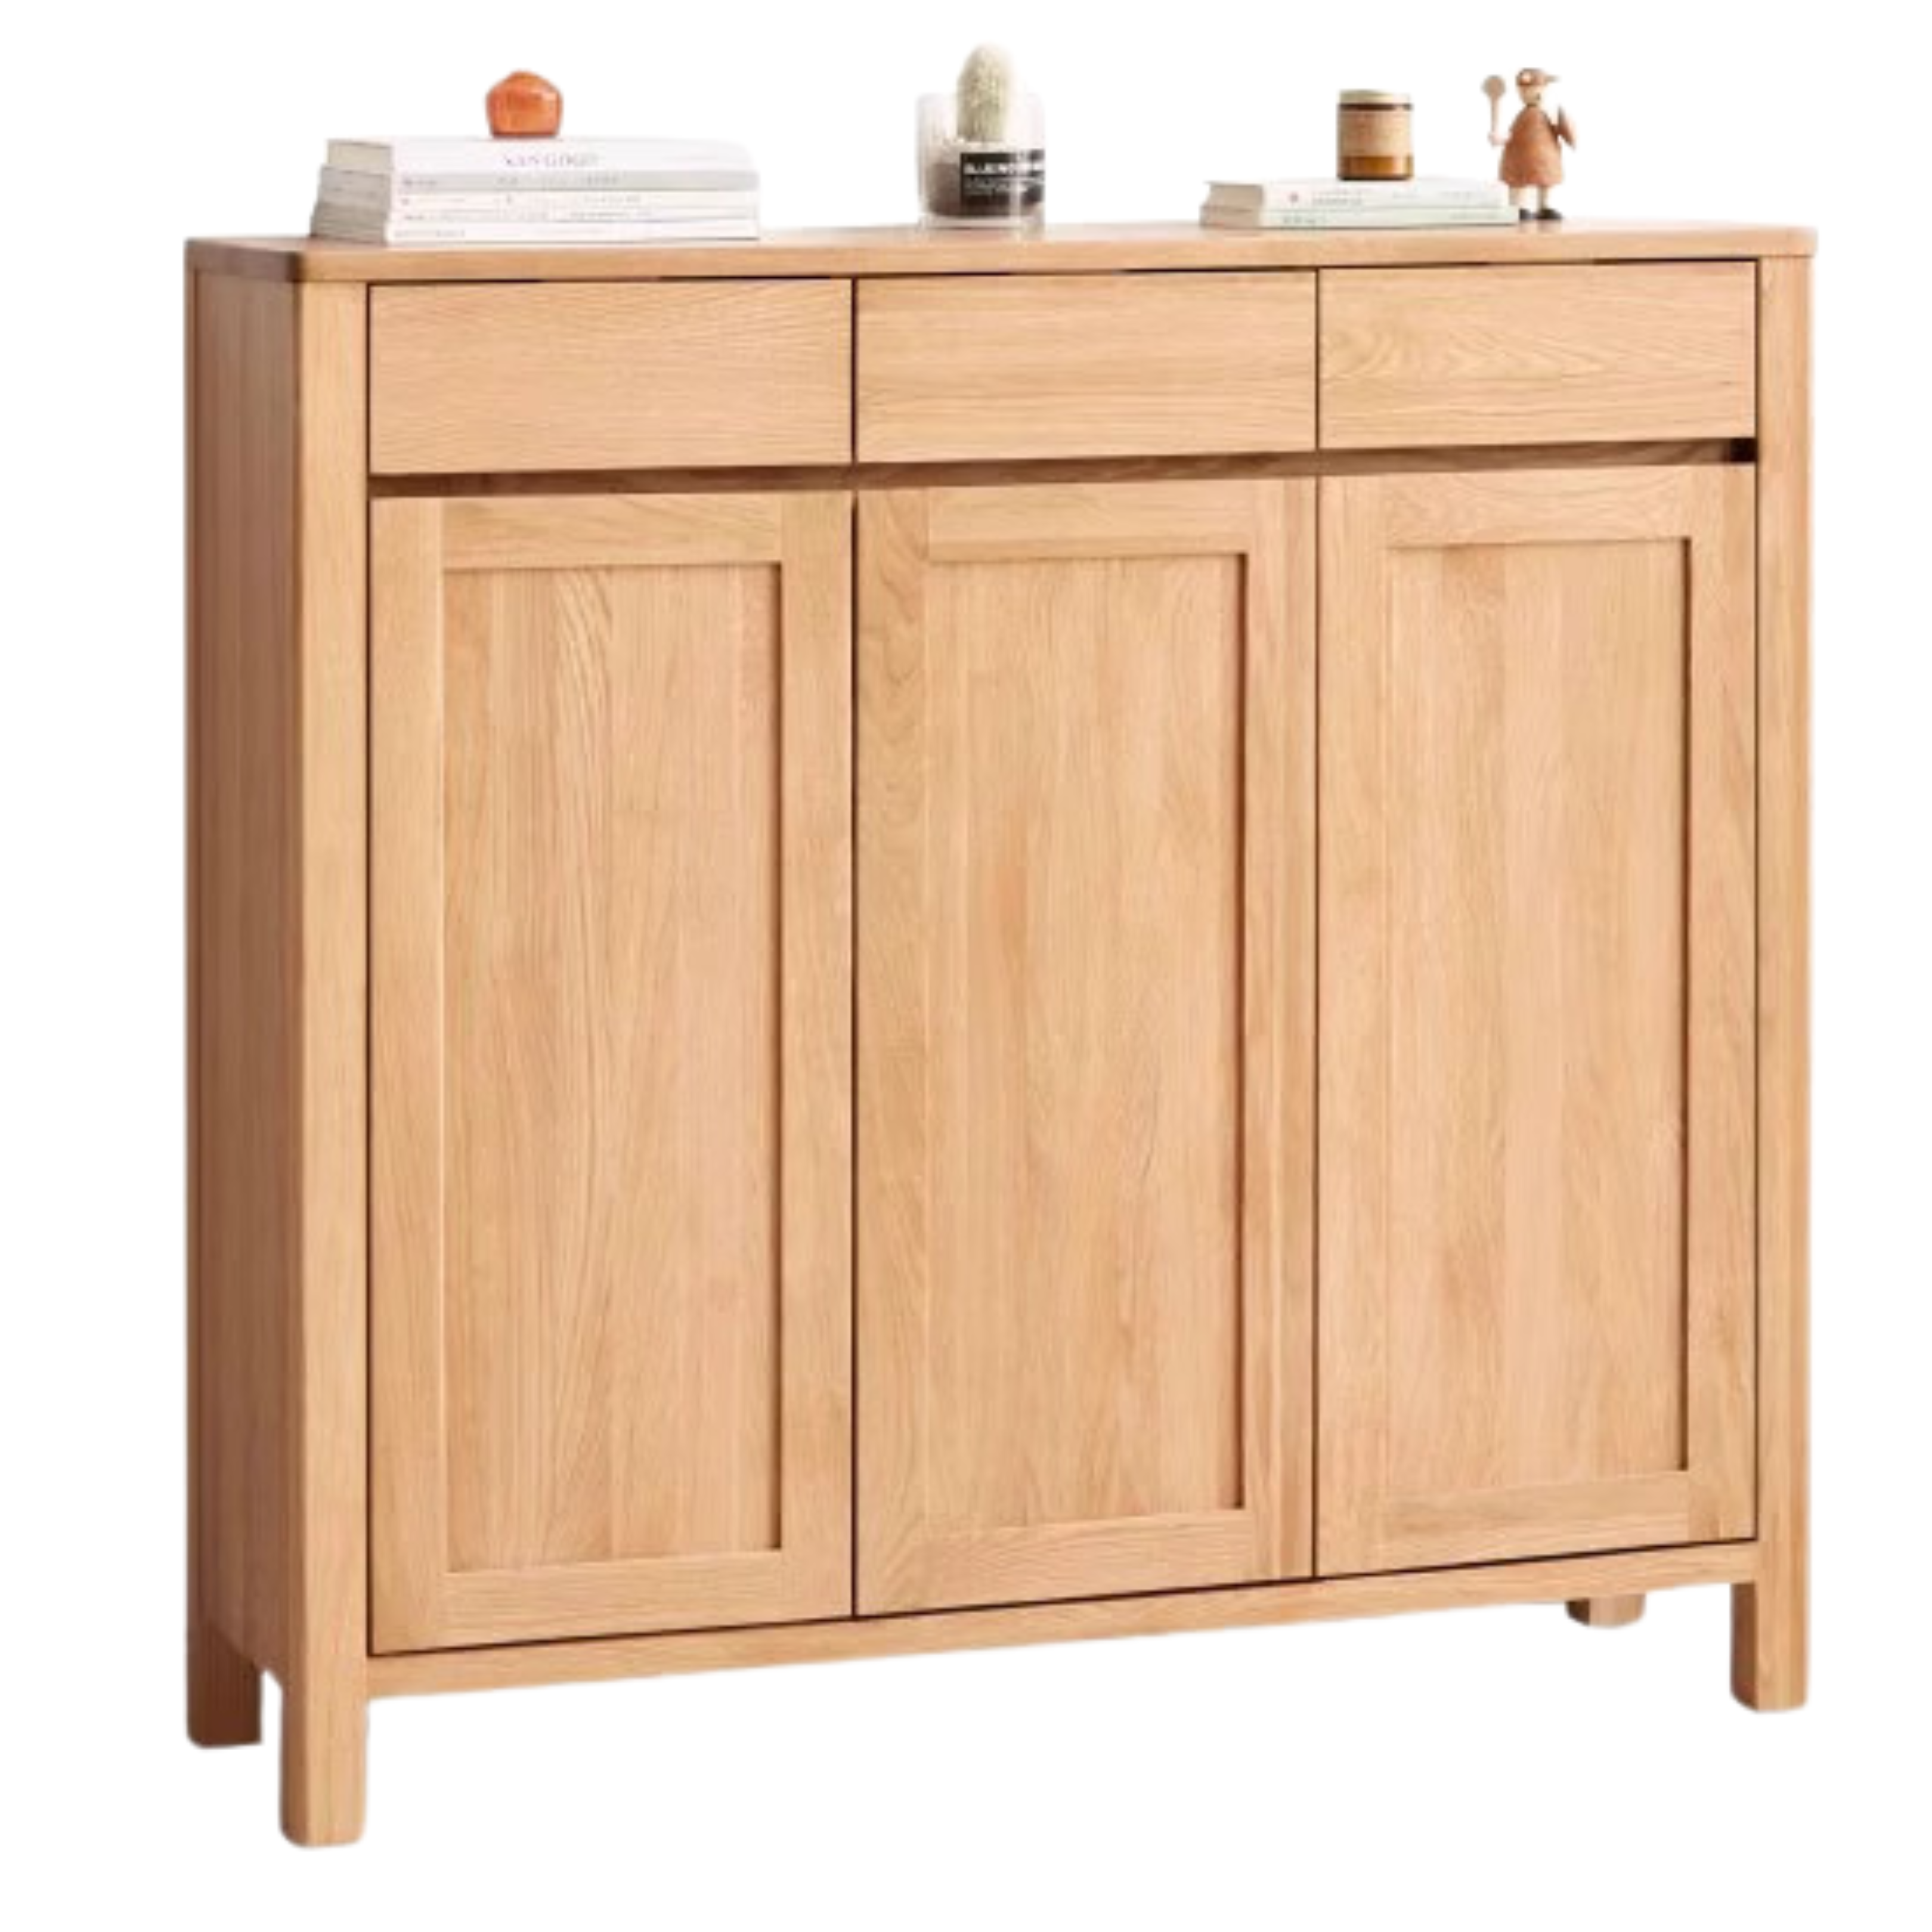 Oak solid wood Four-door Shoe cabinet: